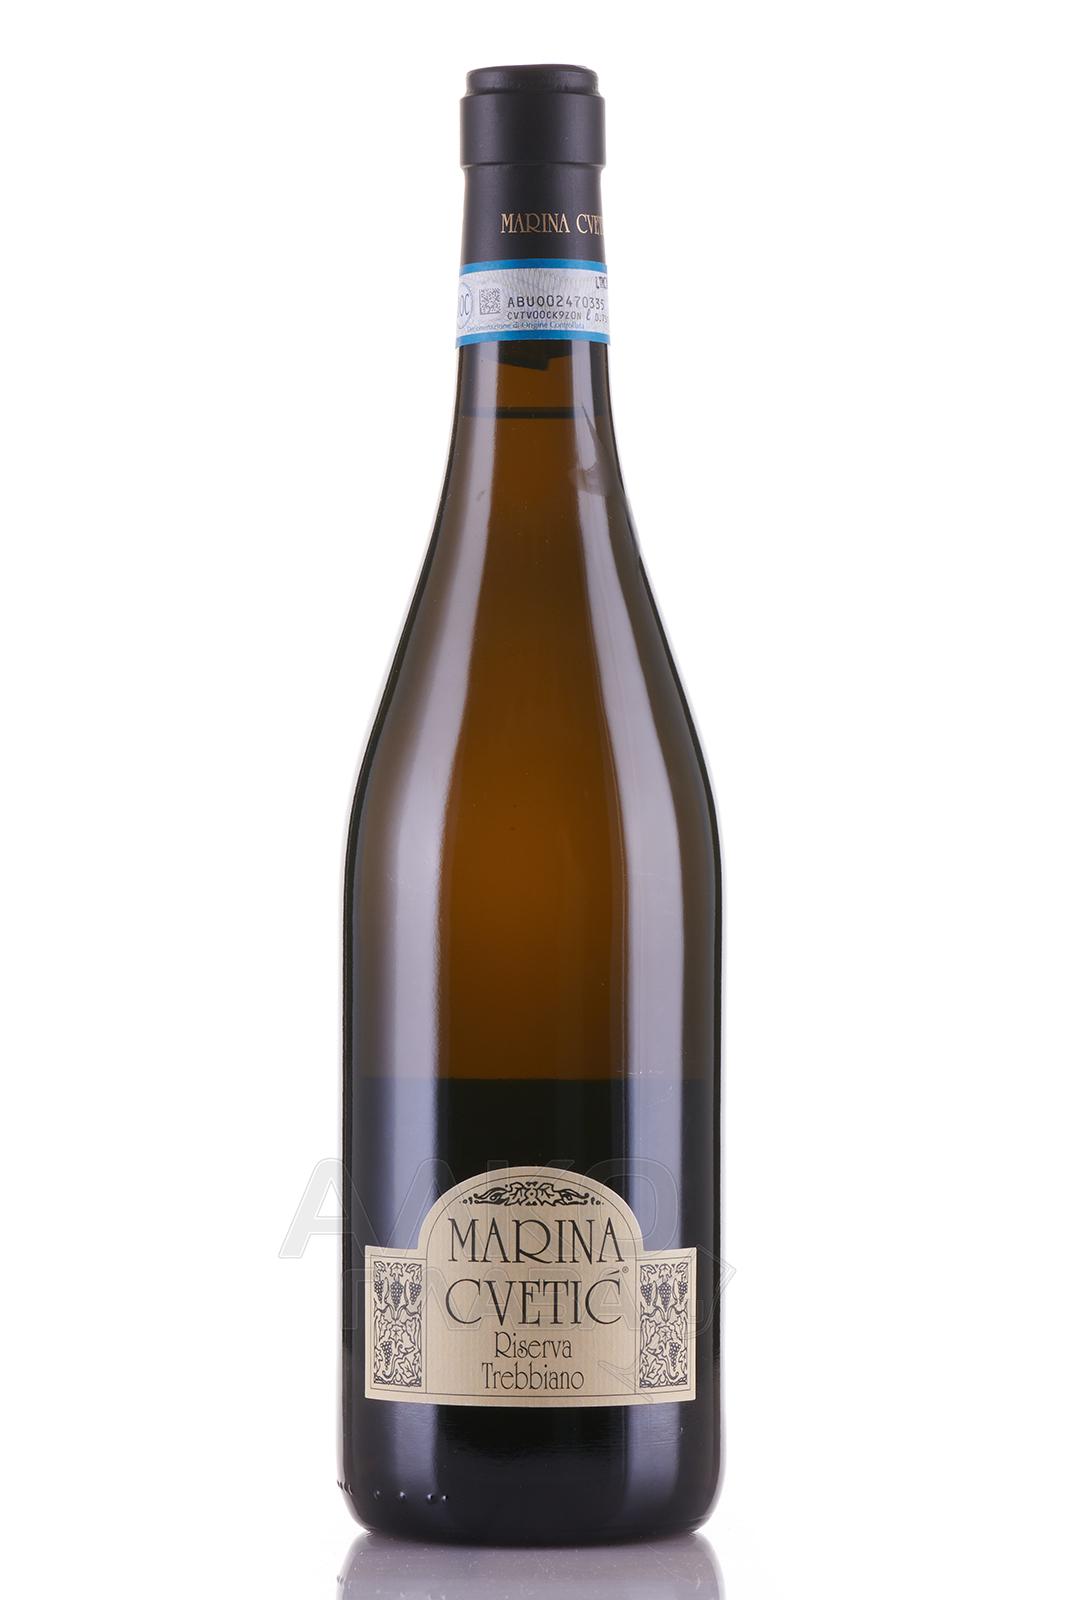 Masciarelli Marina Cvetic Trebbiano d’Abruzzo Riserva DOC - вино Треббиано Дабруццо Ризерва Марина Цветич ДОК 0.75 л белое сухое